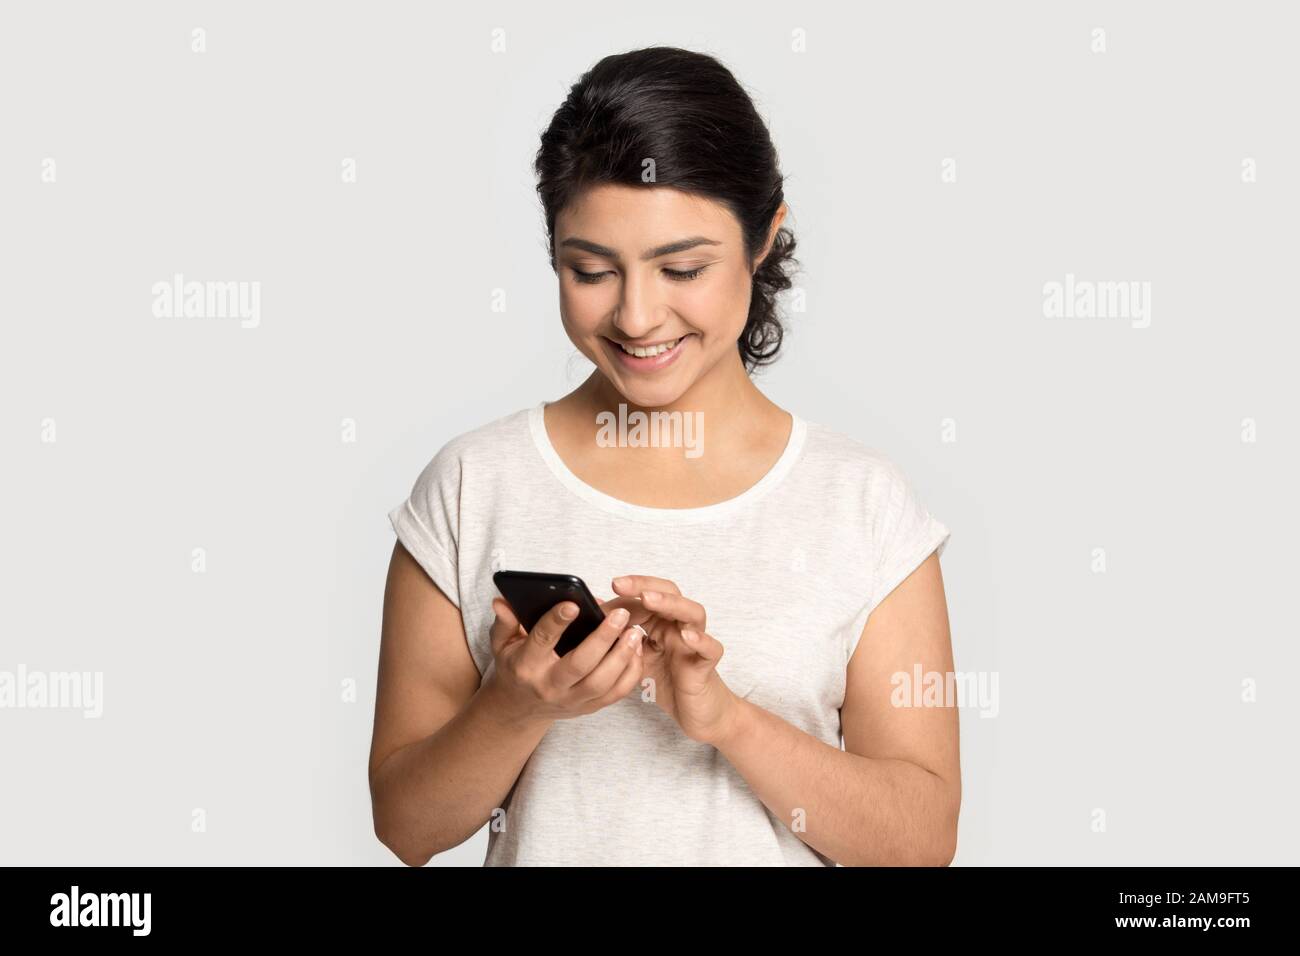 Une femme d'origine ethnique indienne du millénaire qui tient un téléphone cellulaire. Banque D'Images